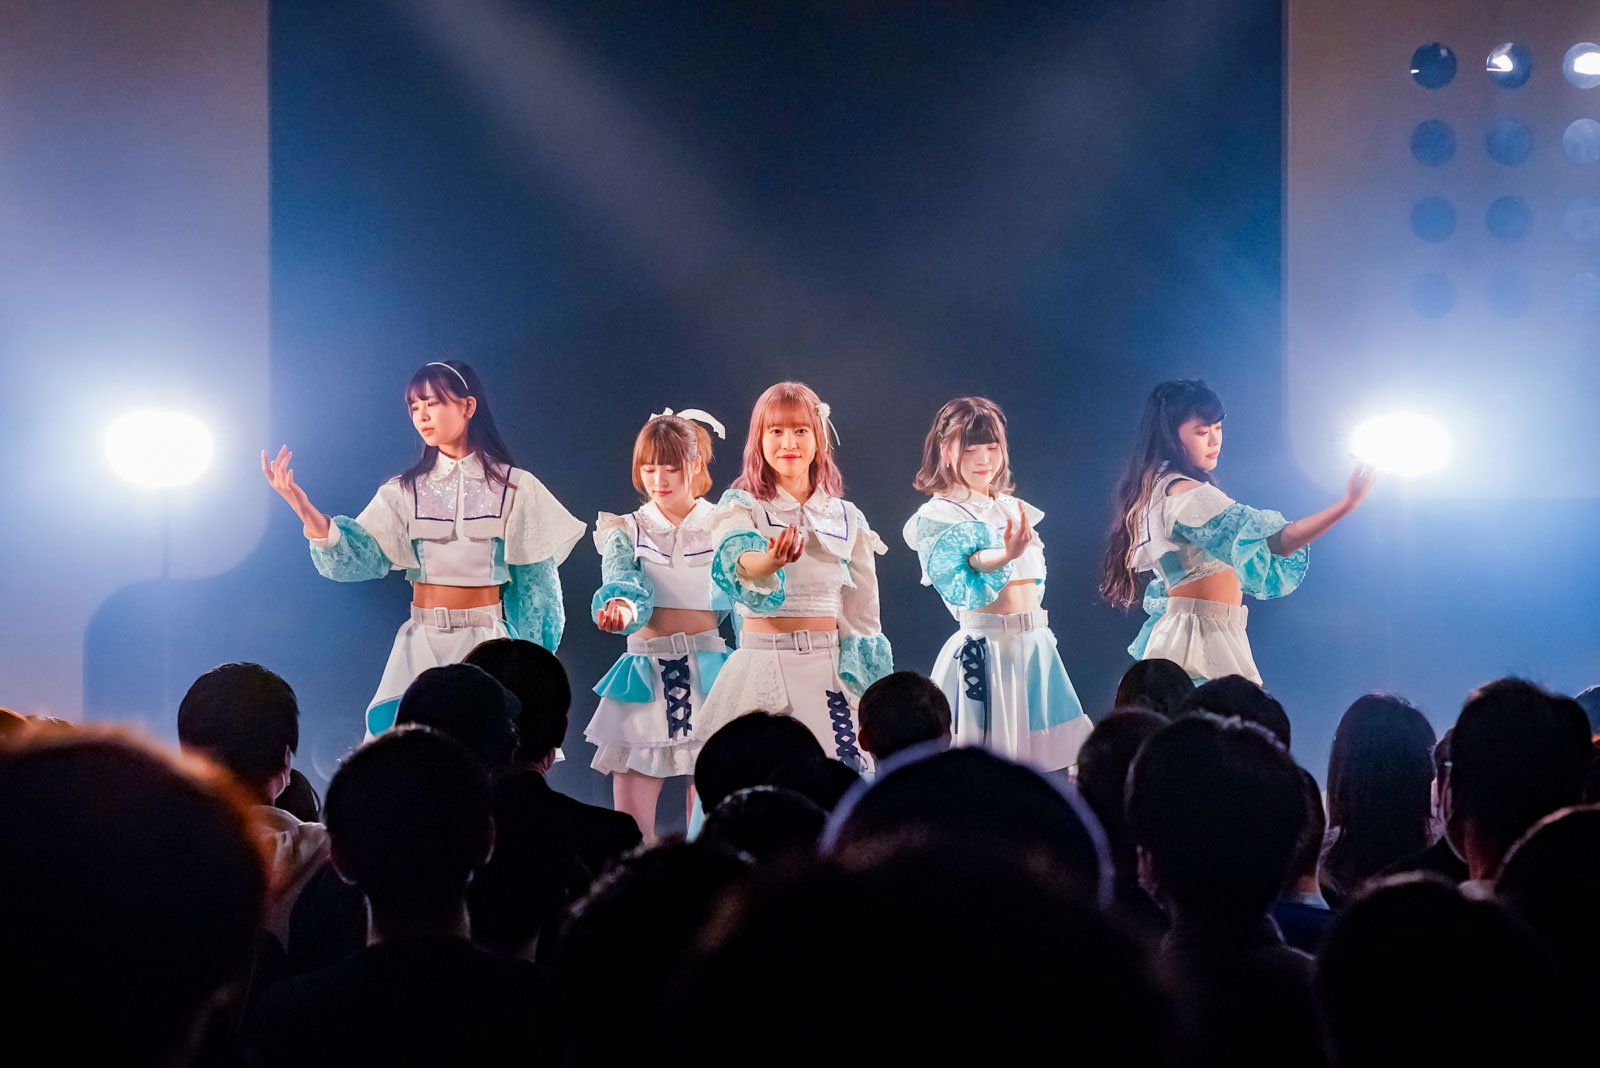 群青の世界「東名阪TOUR FINAL『COLORS』in TOKYO」ライブレポ -その先に広がる限りなく透明に近い青の世界、それを観てみたい。-